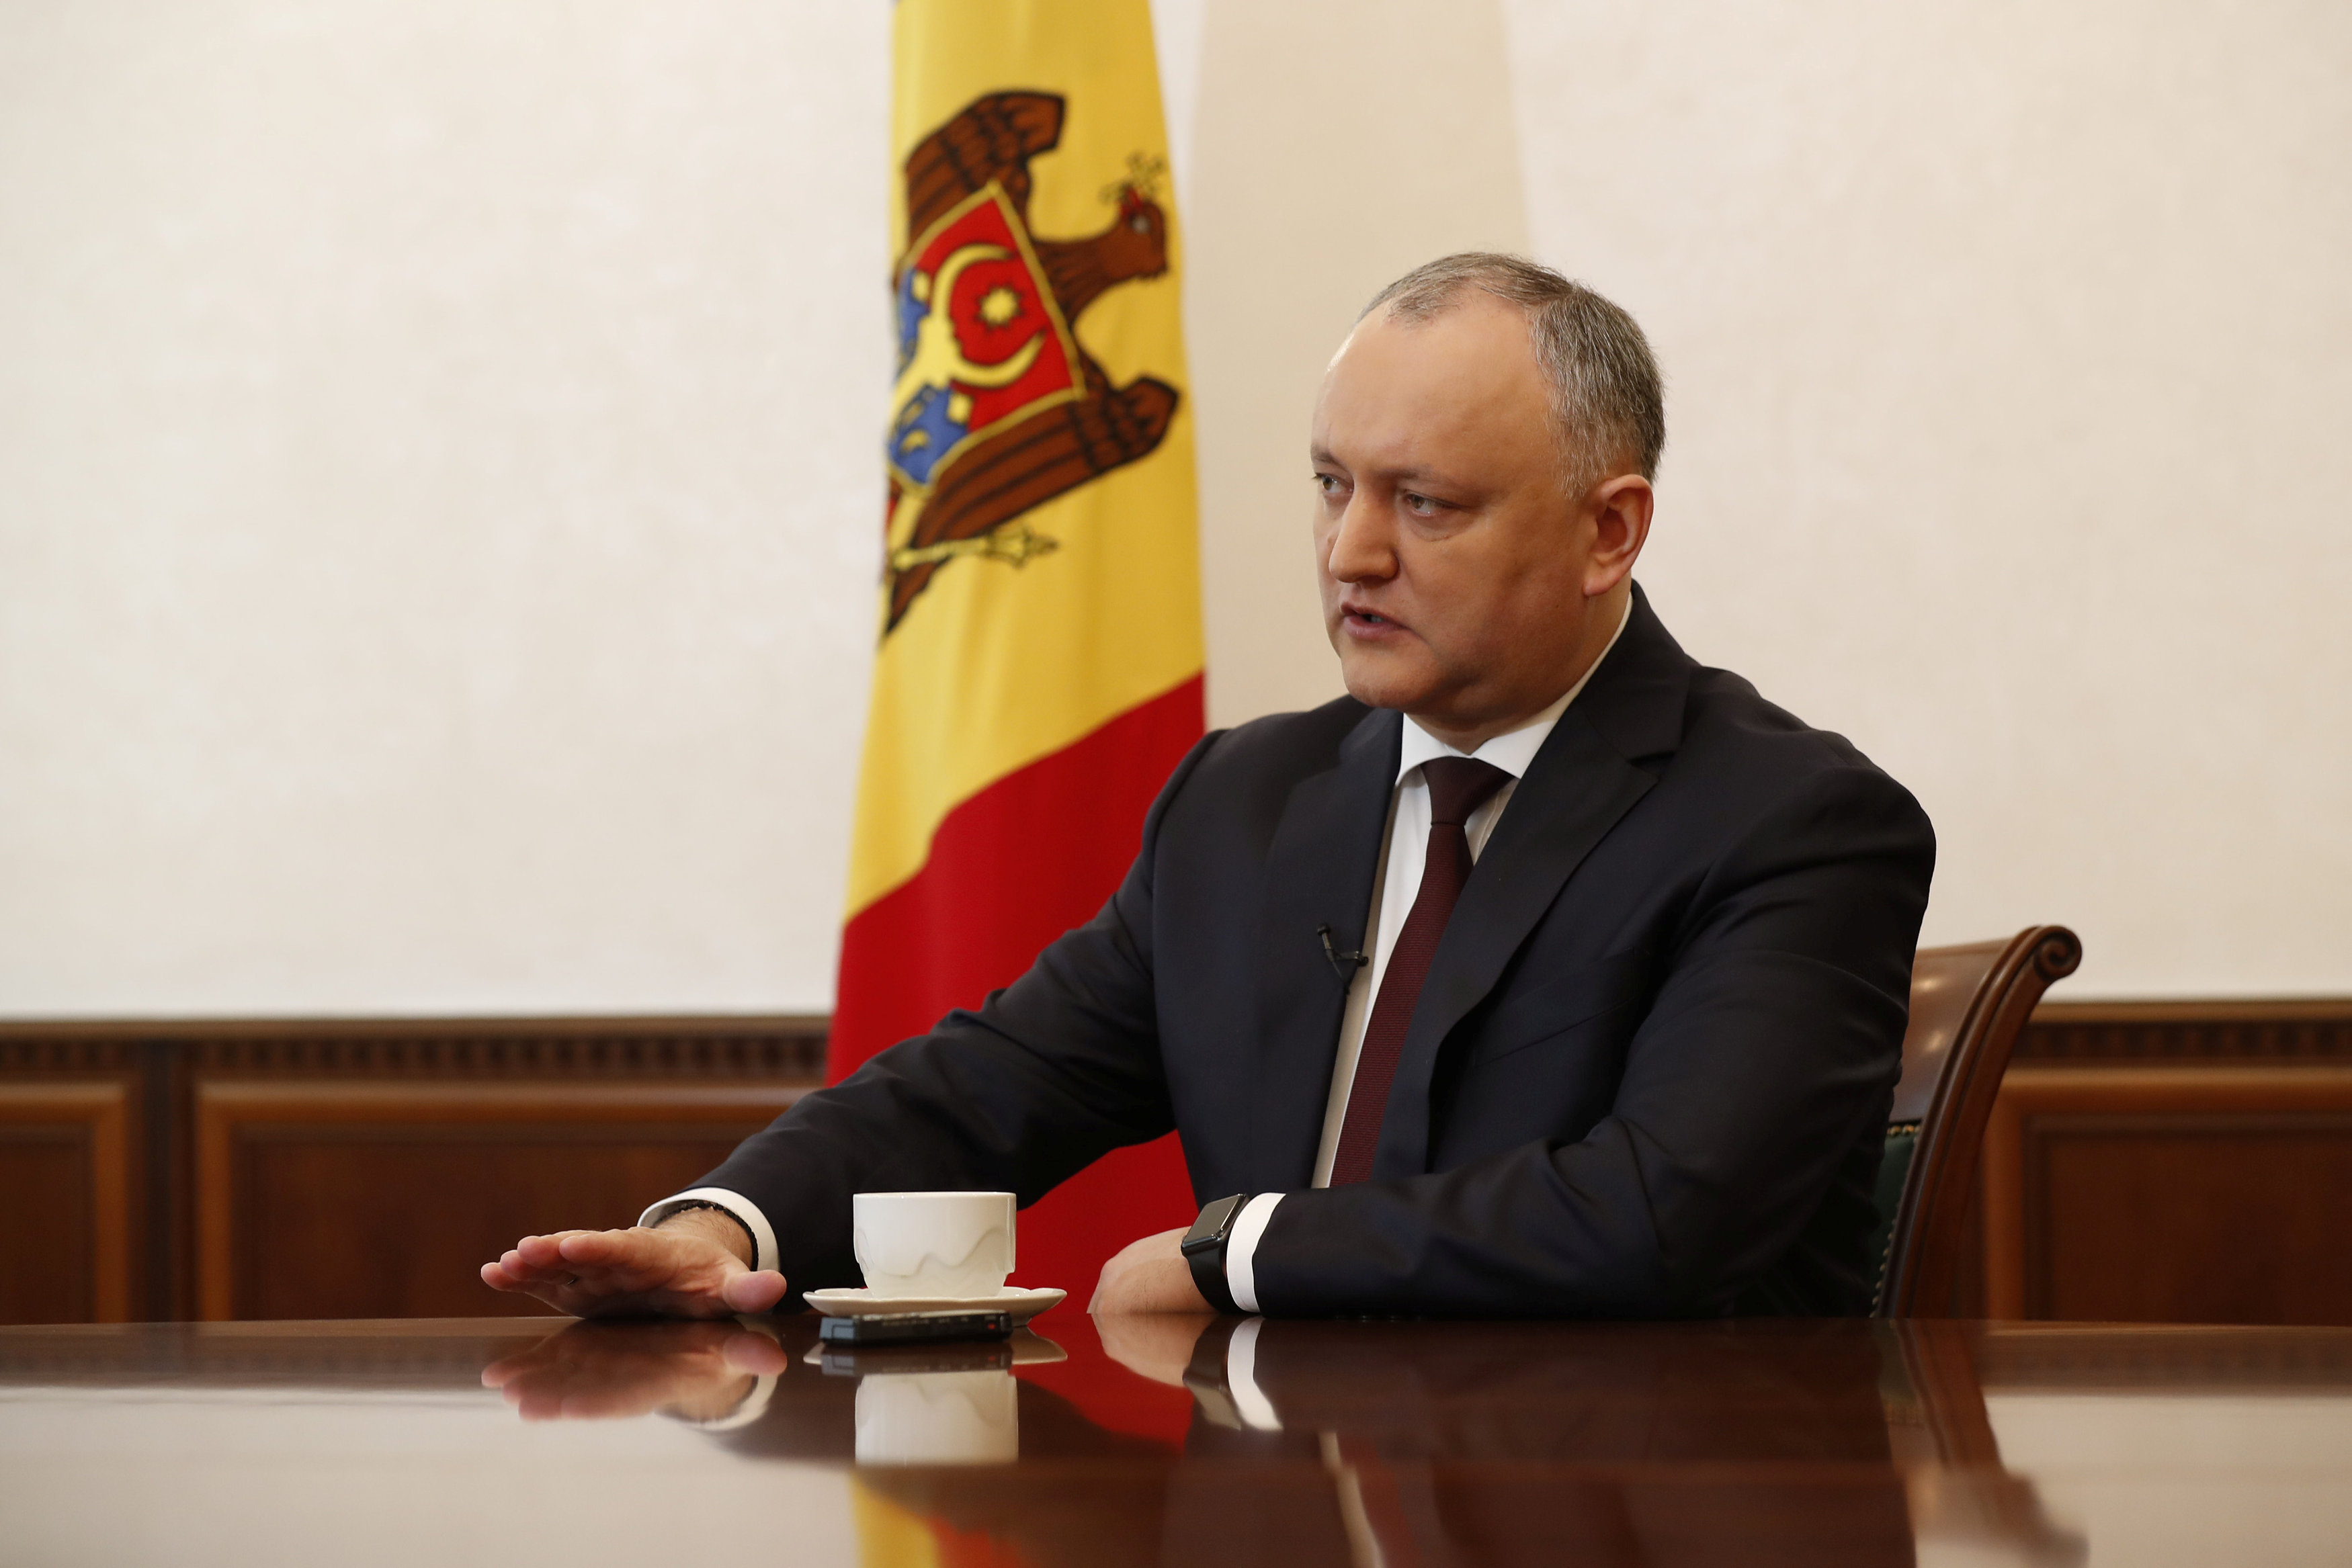 Fostul președinte al Republicii Moldova reținut pentru 72 de ore